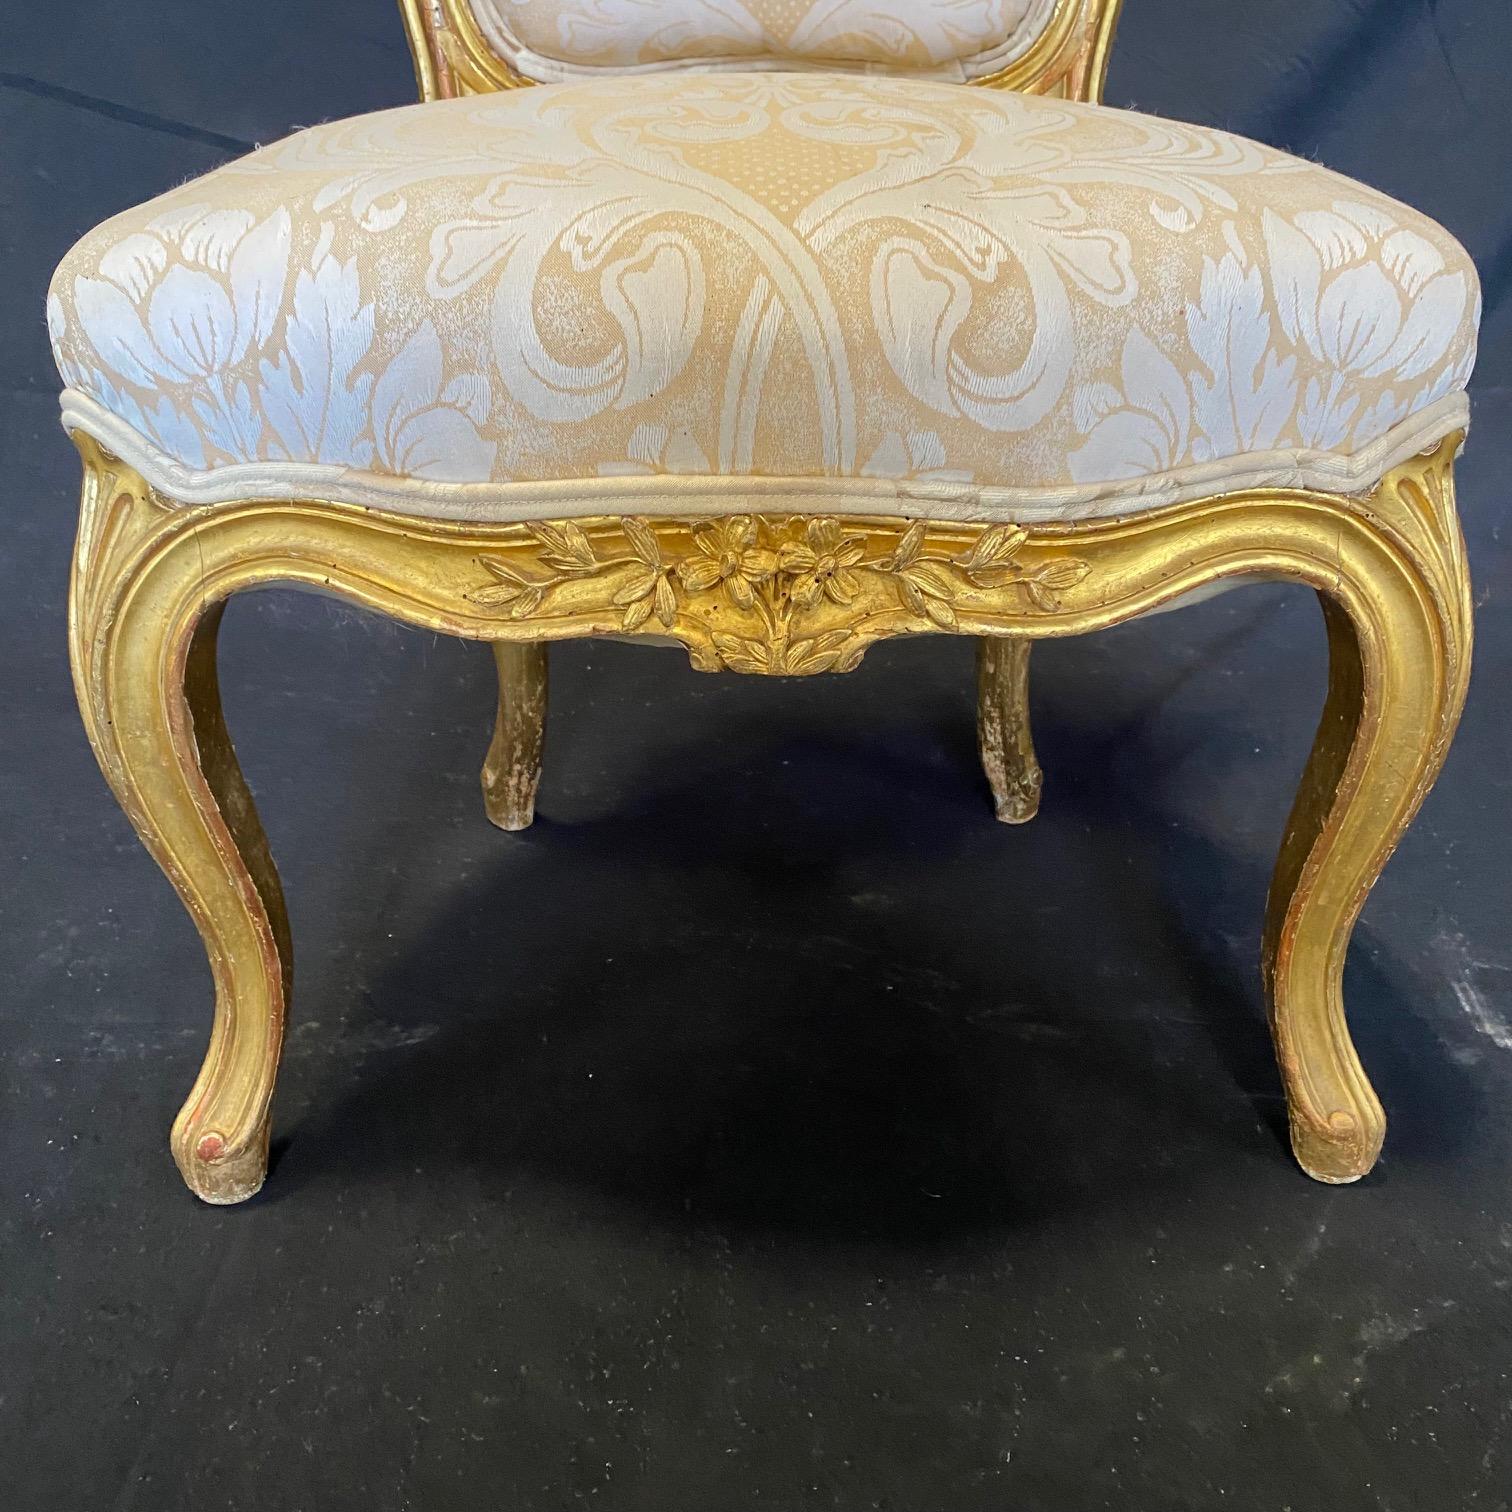 Très belle paire de fauteuils pantoufles Louis XV en bois doré avec une sculpture florale complexe sur le tablier et le haut du dossier.  La vitre unique au dos est une touche agréable. #2255